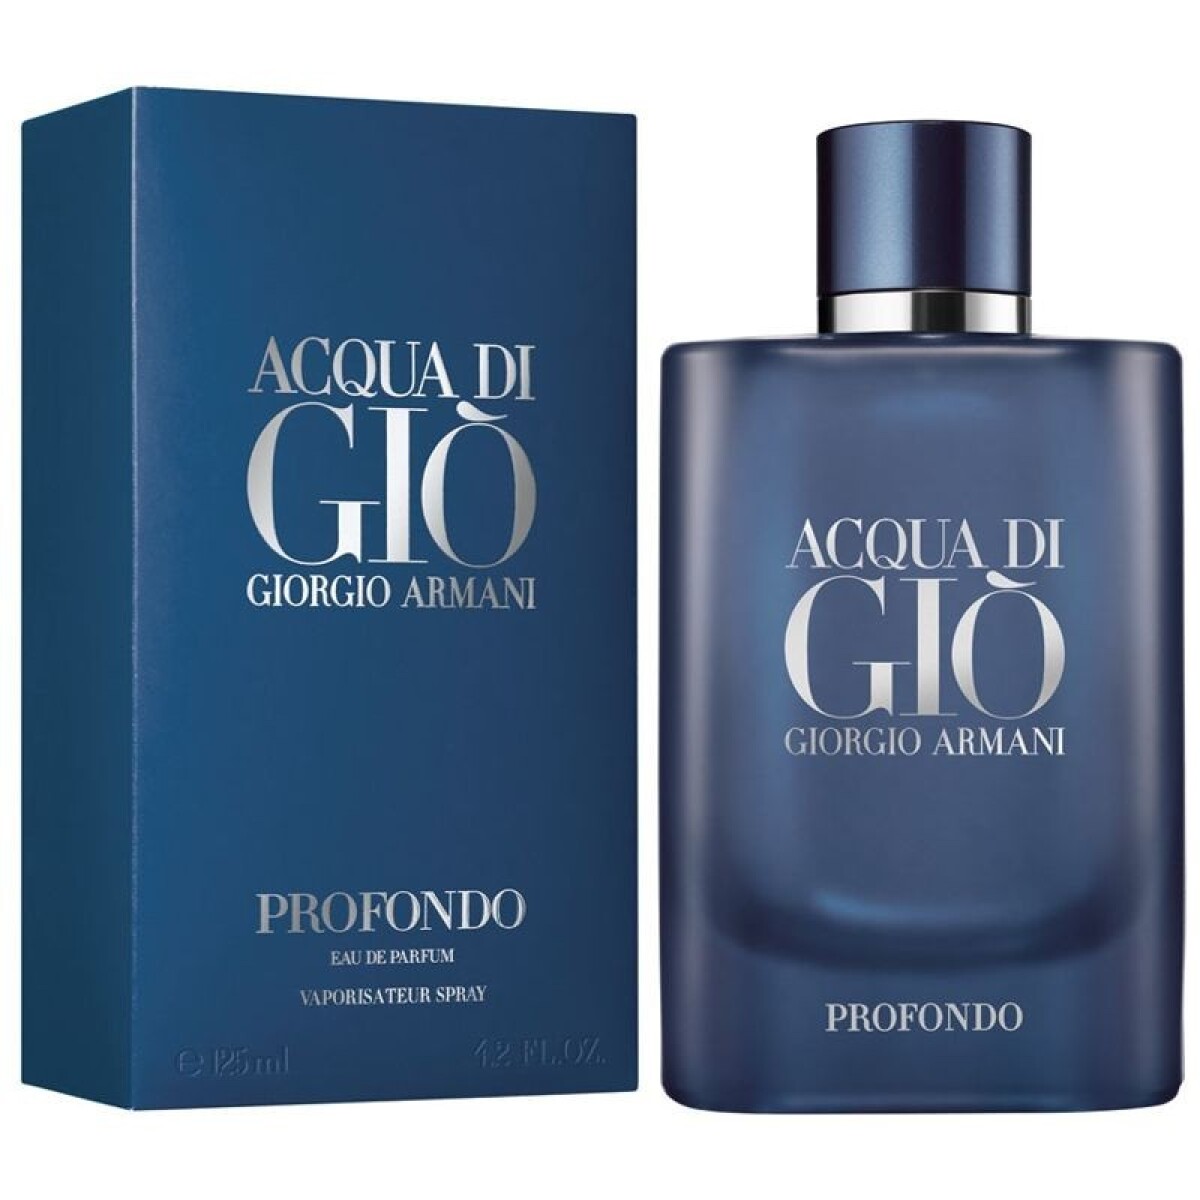 Perfume Acqua Di Gio Profondo Edp 125 Ml. 